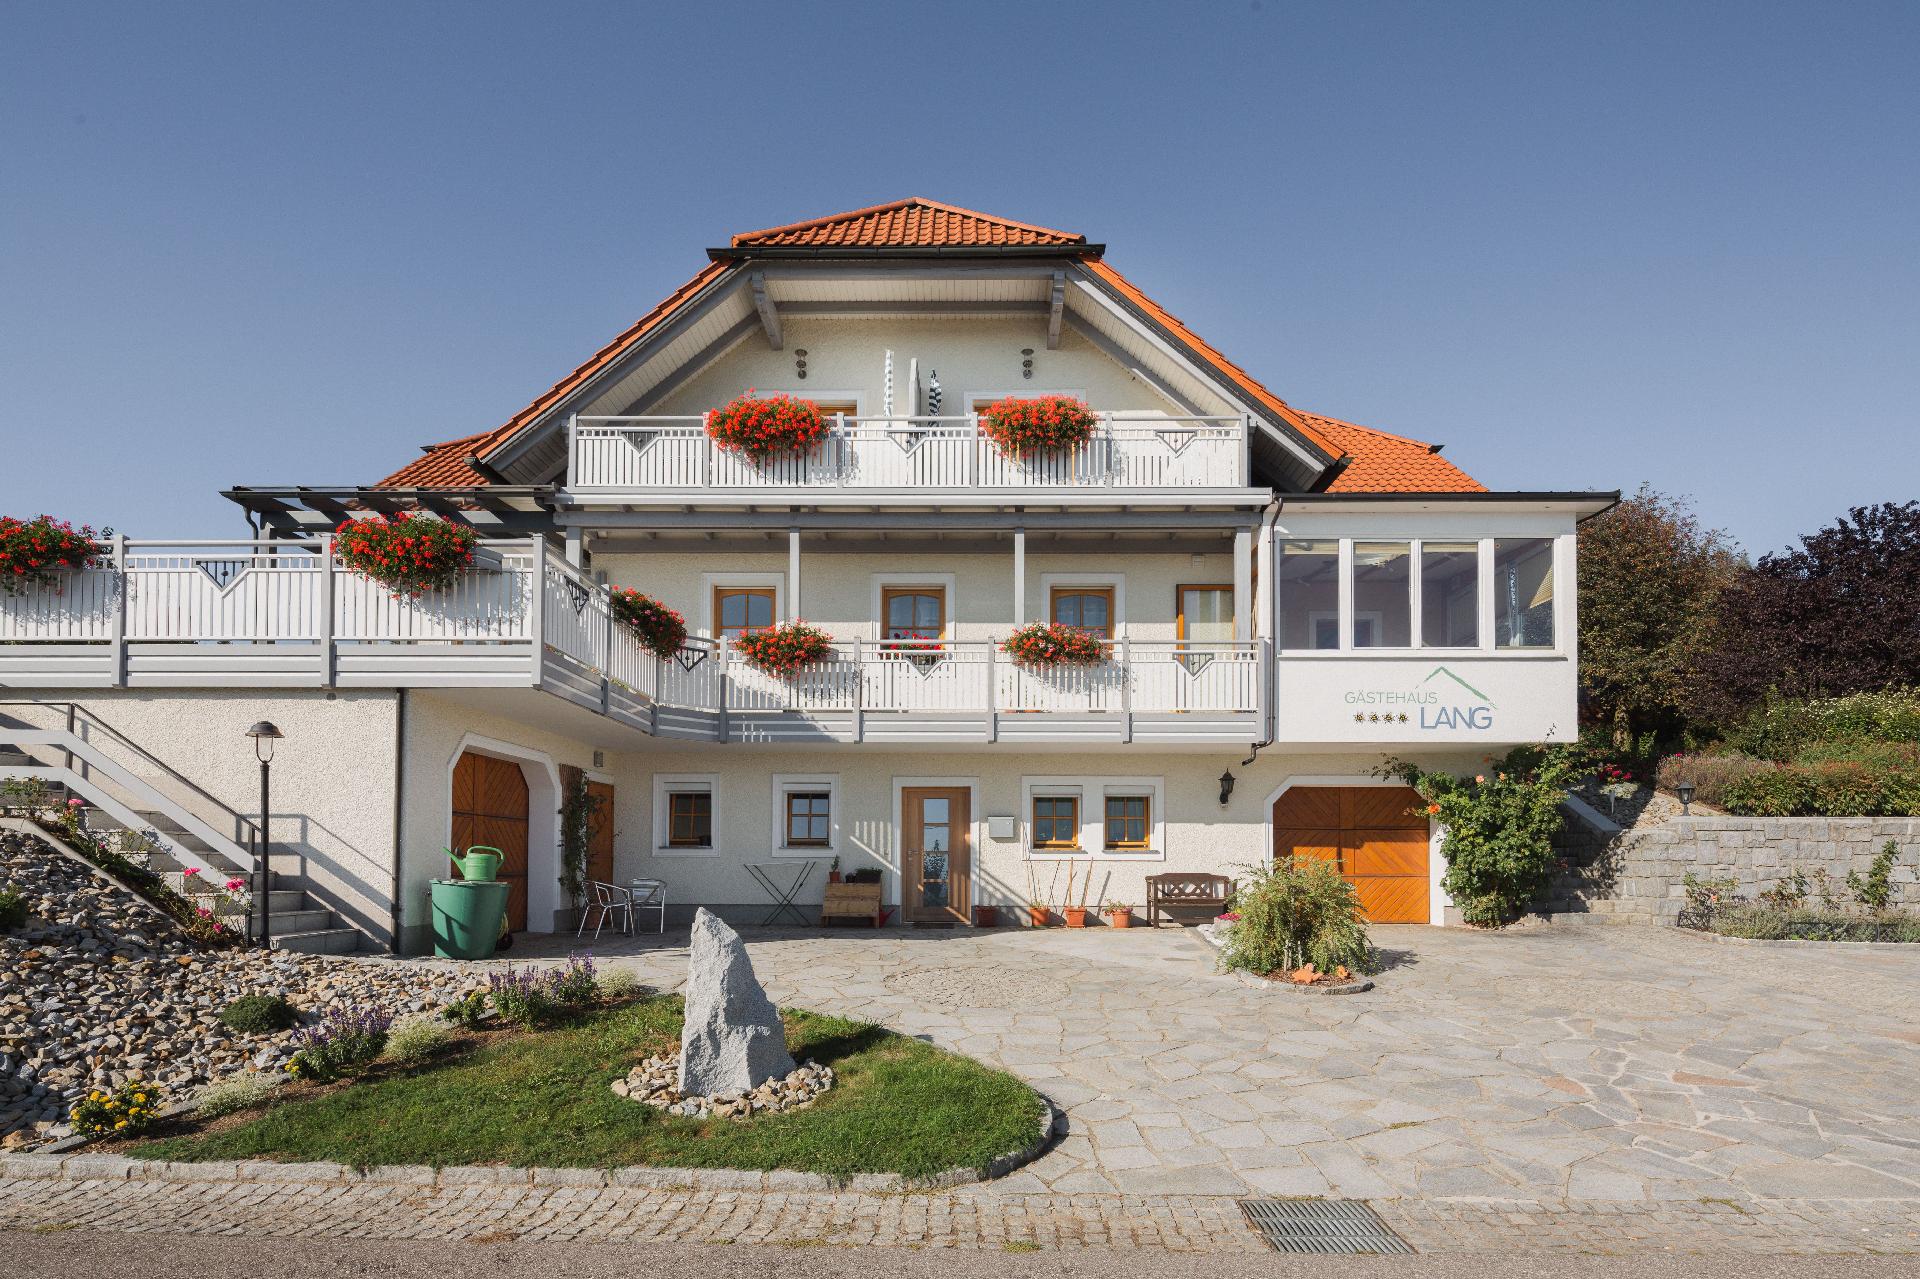 Ferienwohnung mit Balkon für drei Personen Ferienhaus in Österreich